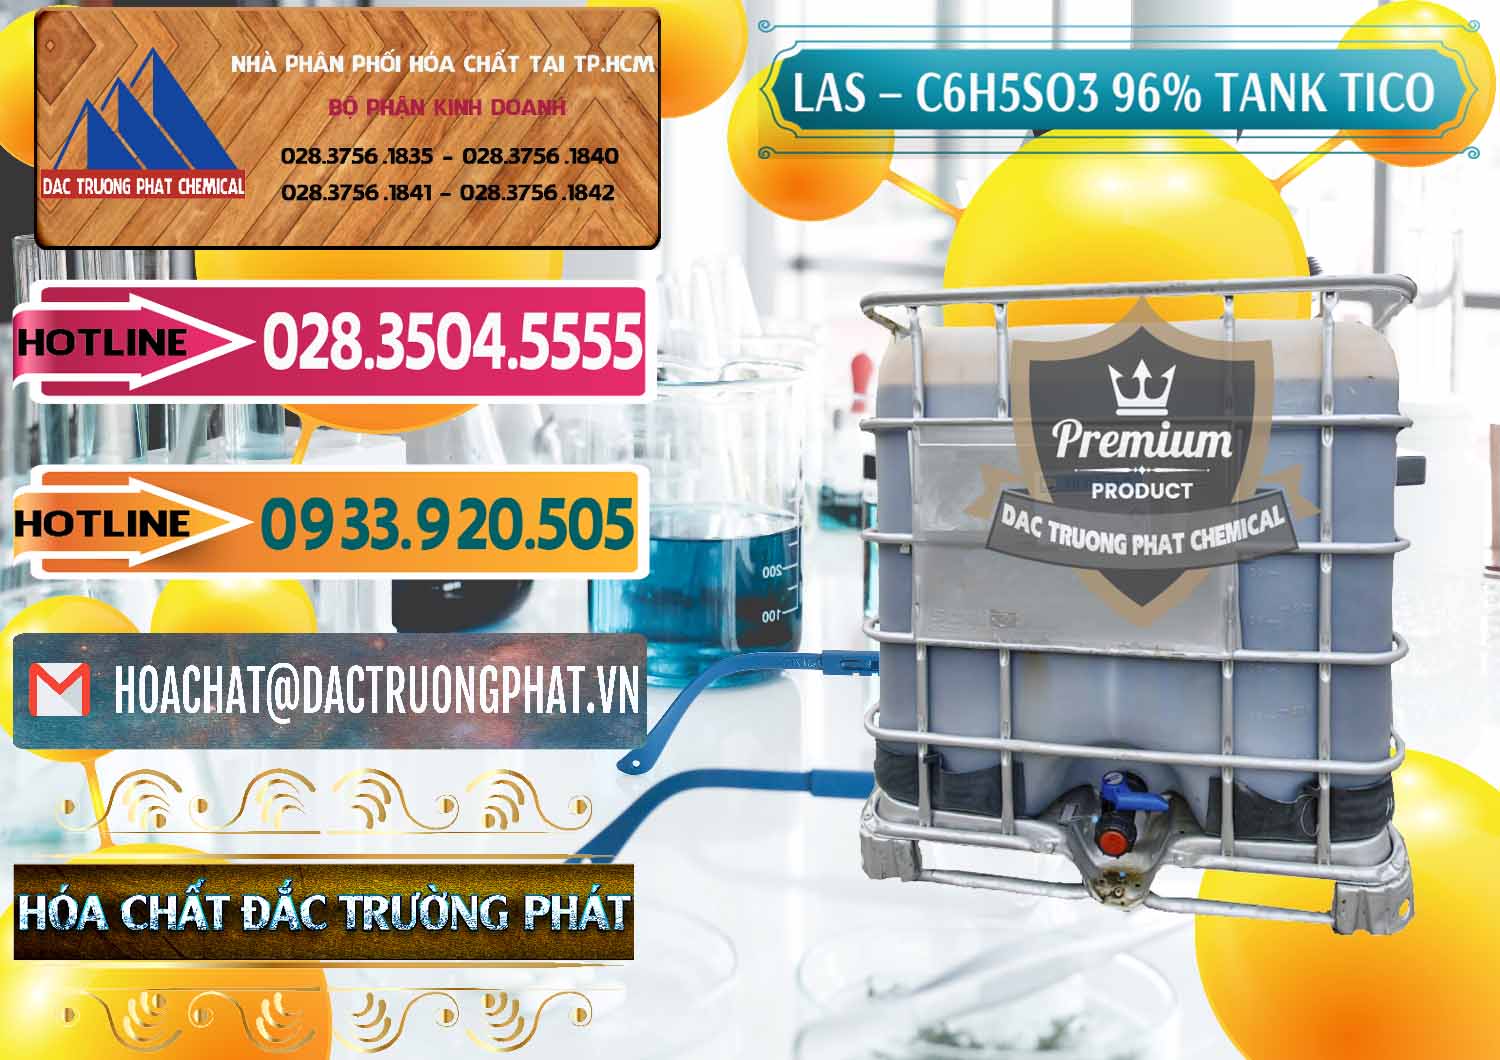 Chuyên bán & phân phối Chất tạo bọt Las P Tico Tank IBC Bồn Việt Nam - 0488 - Cty chuyên cung cấp & nhập khẩu hóa chất tại TP.HCM - dactruongphat.vn